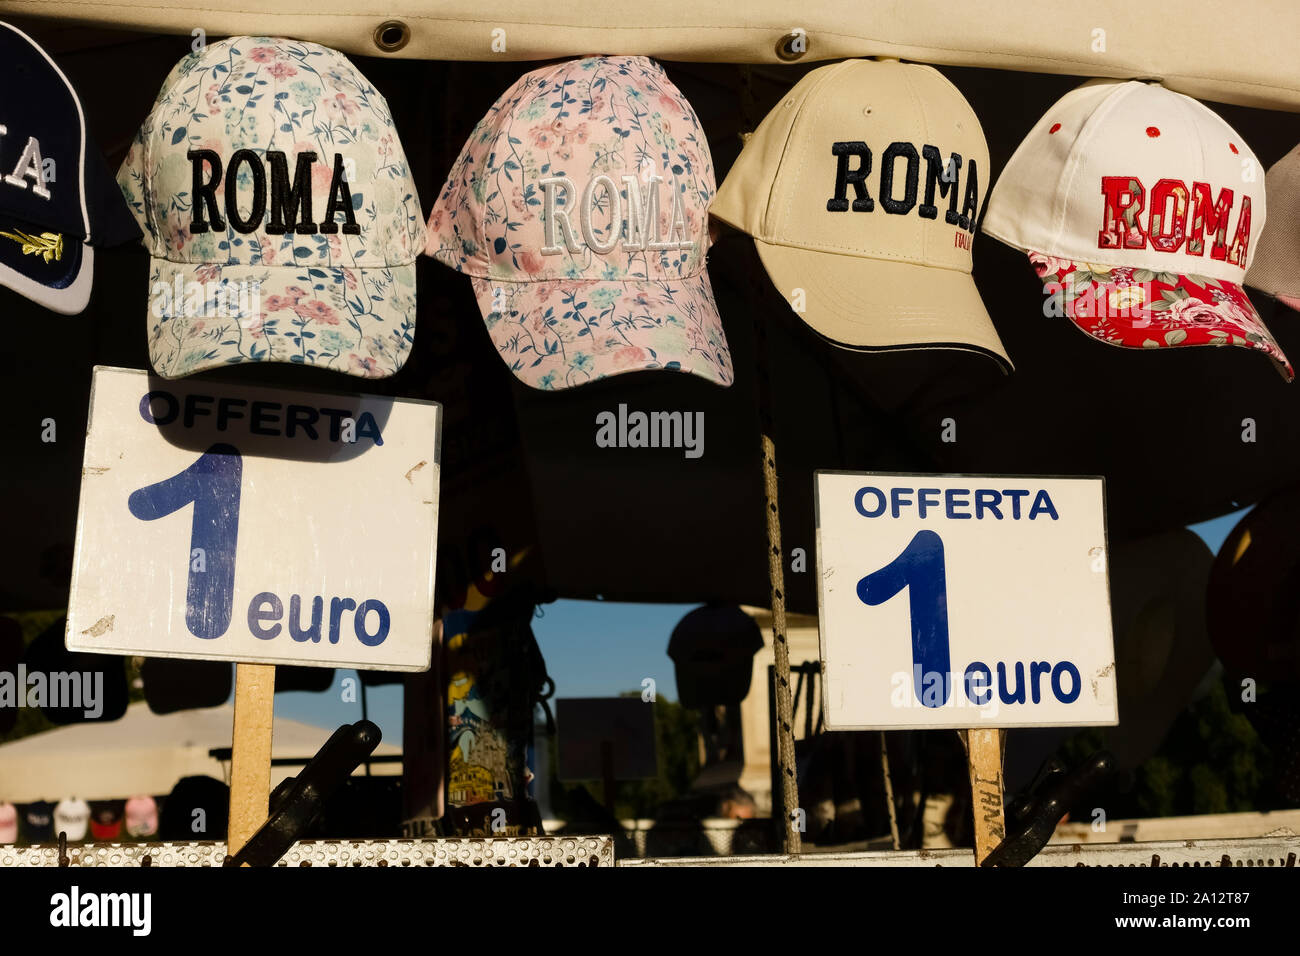 Touristeneinkäufe, Römische Hüte, römische italienische Souvenirs an einem Stand. Rom, Italien, Europa, EU. Stockfoto